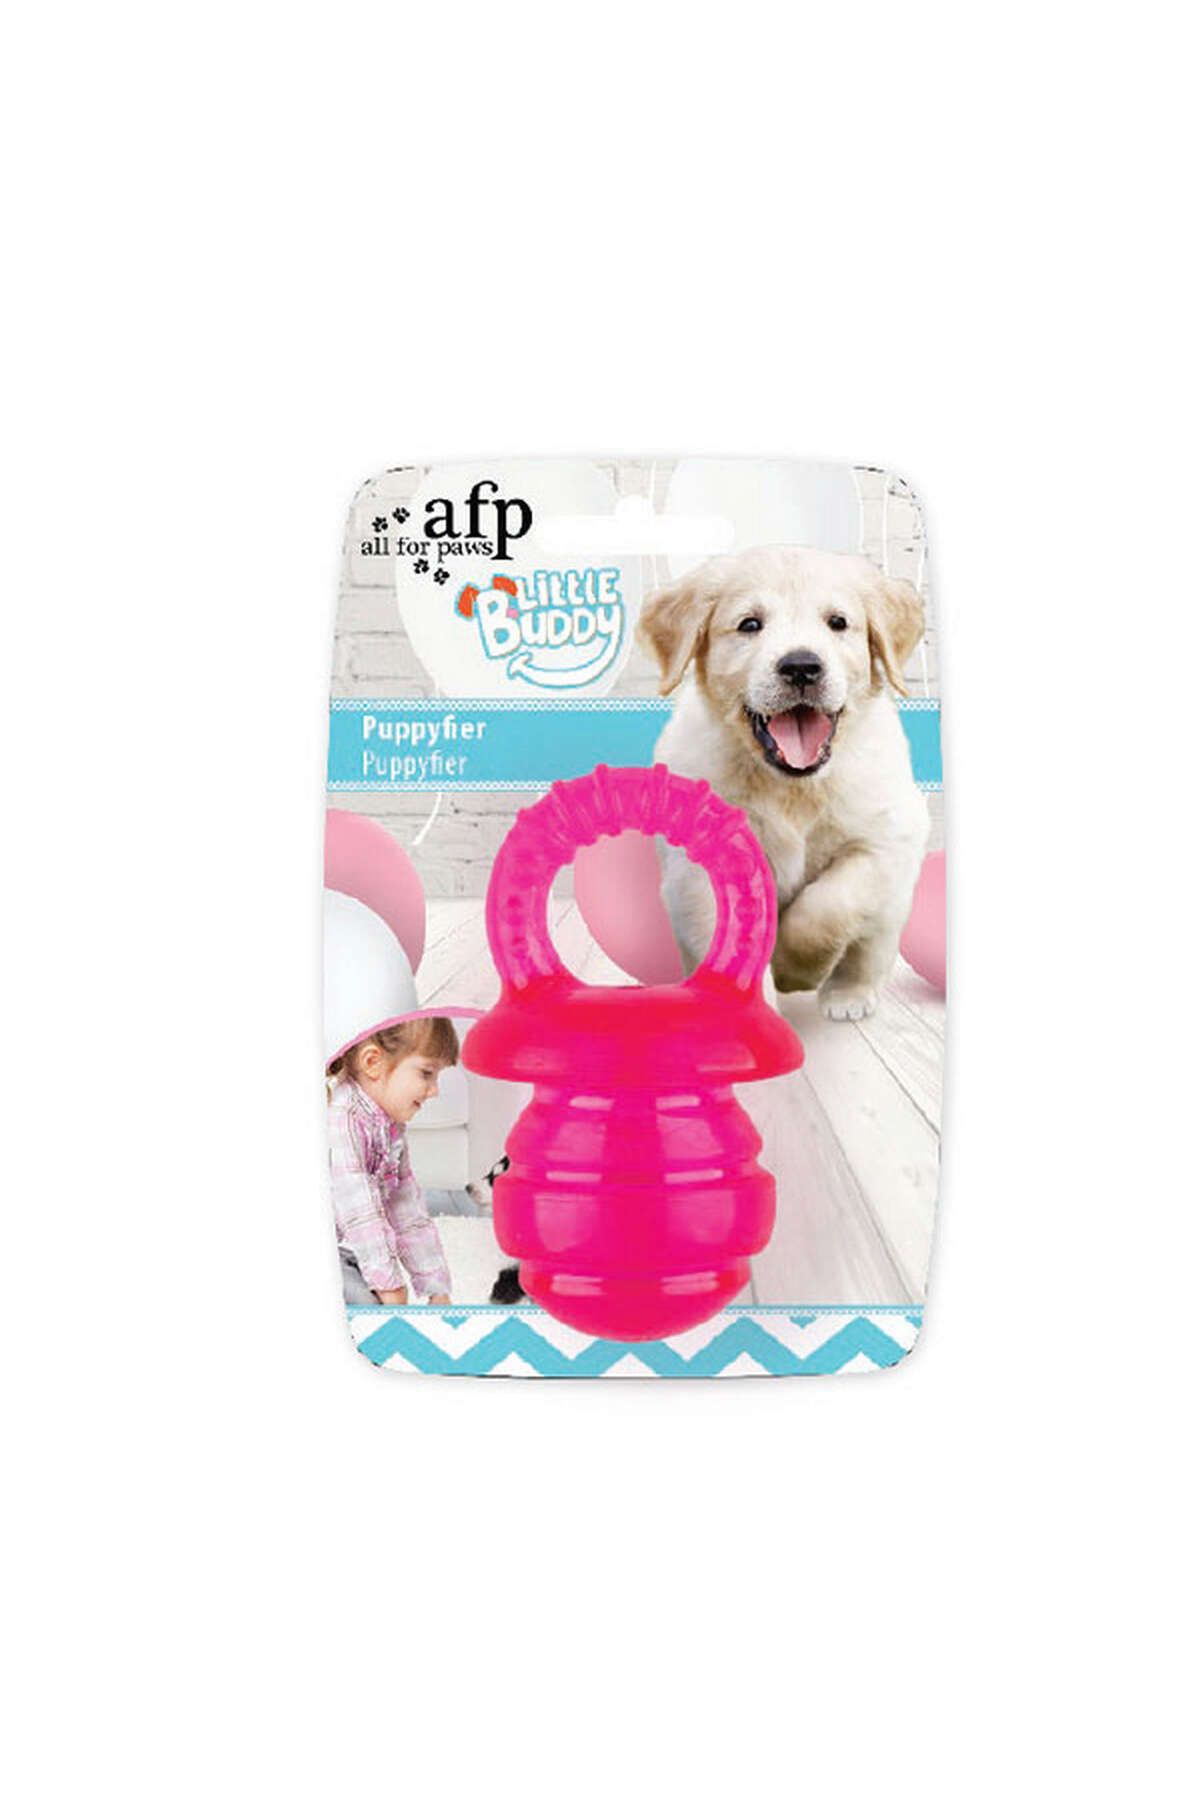 Afp Little Buddy - Puppyfier- Lastik Emzik Pembe L 345109